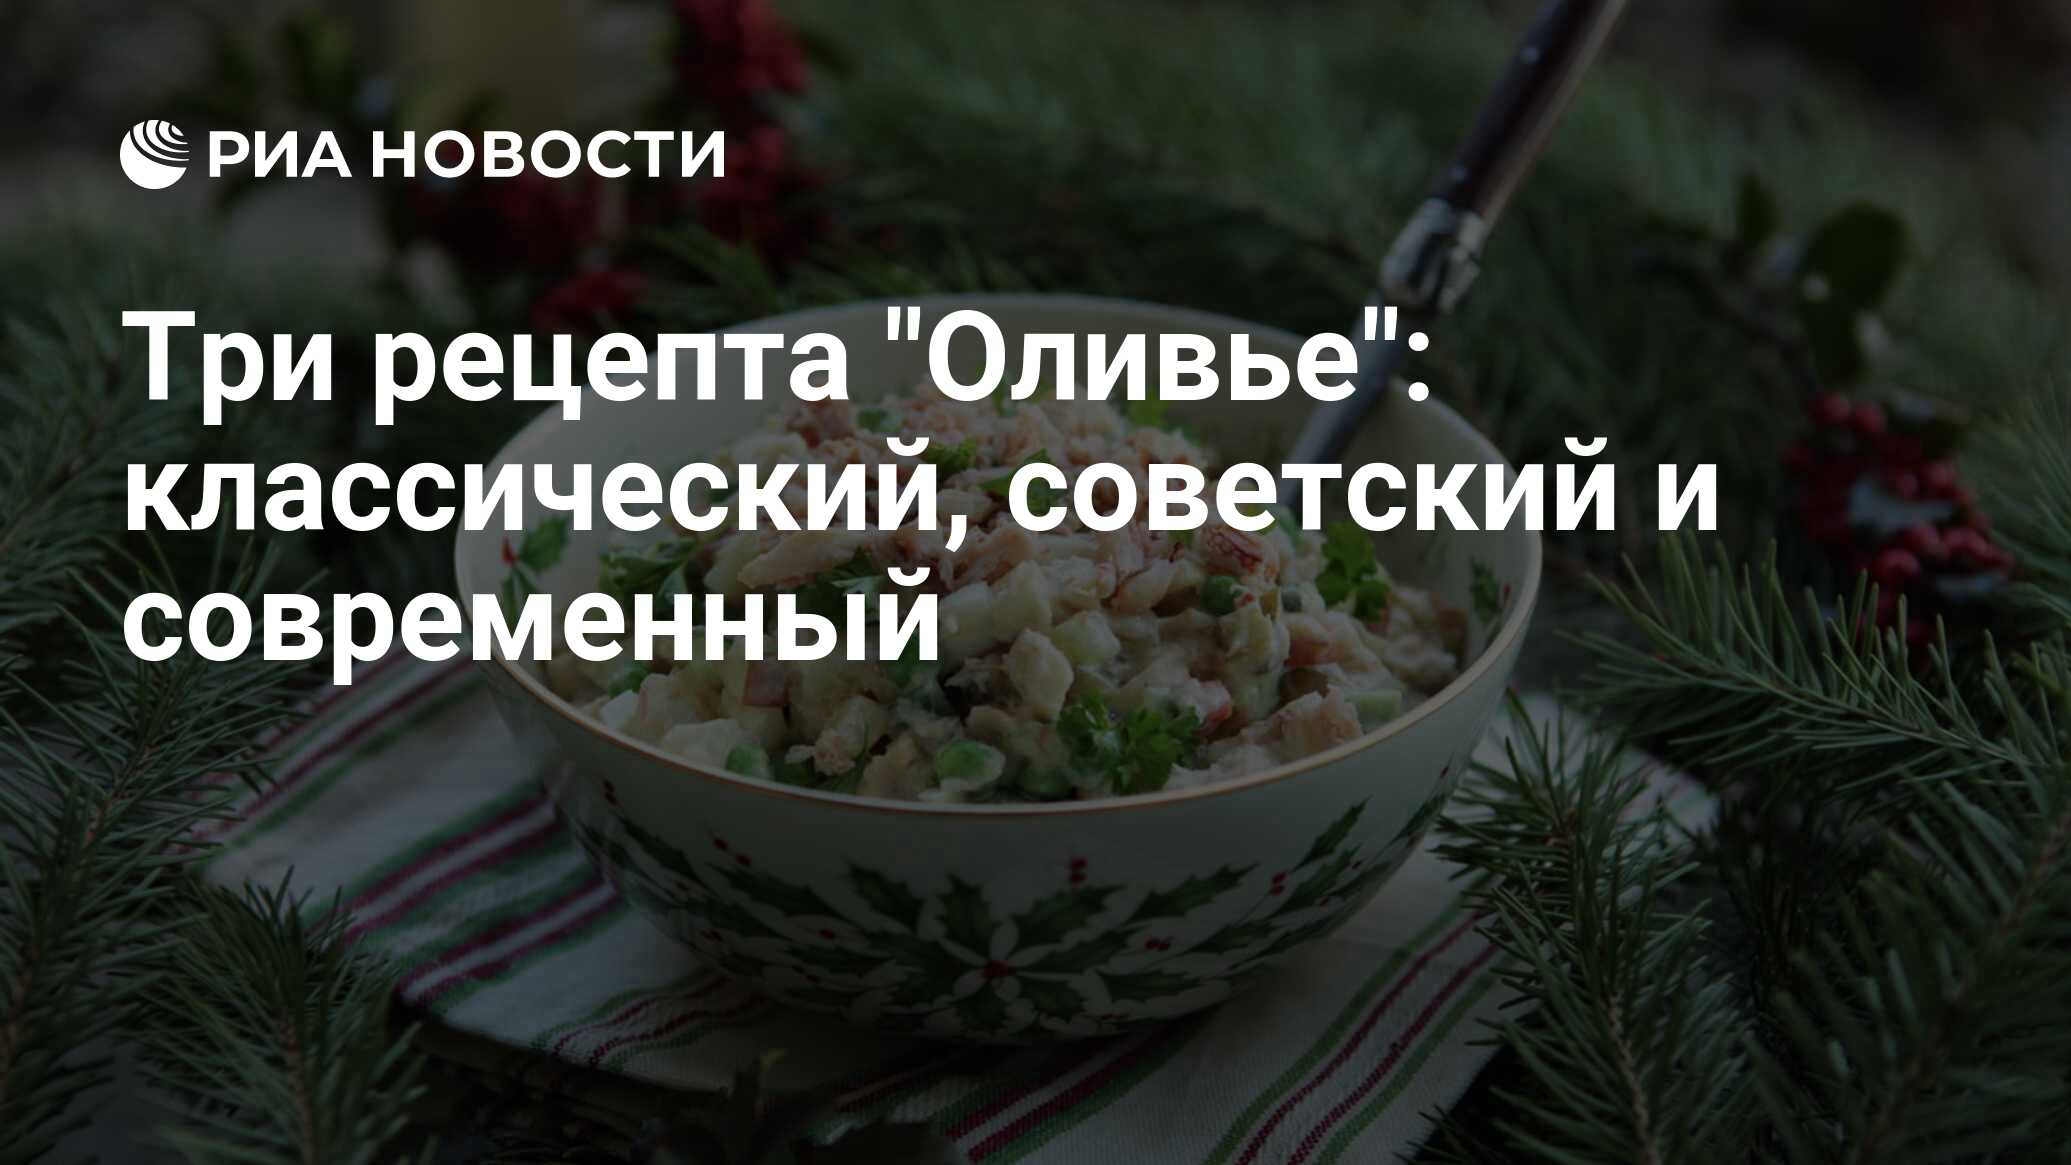 Салат Оливье классический советский, пошаговый рецепт с фото на ккал